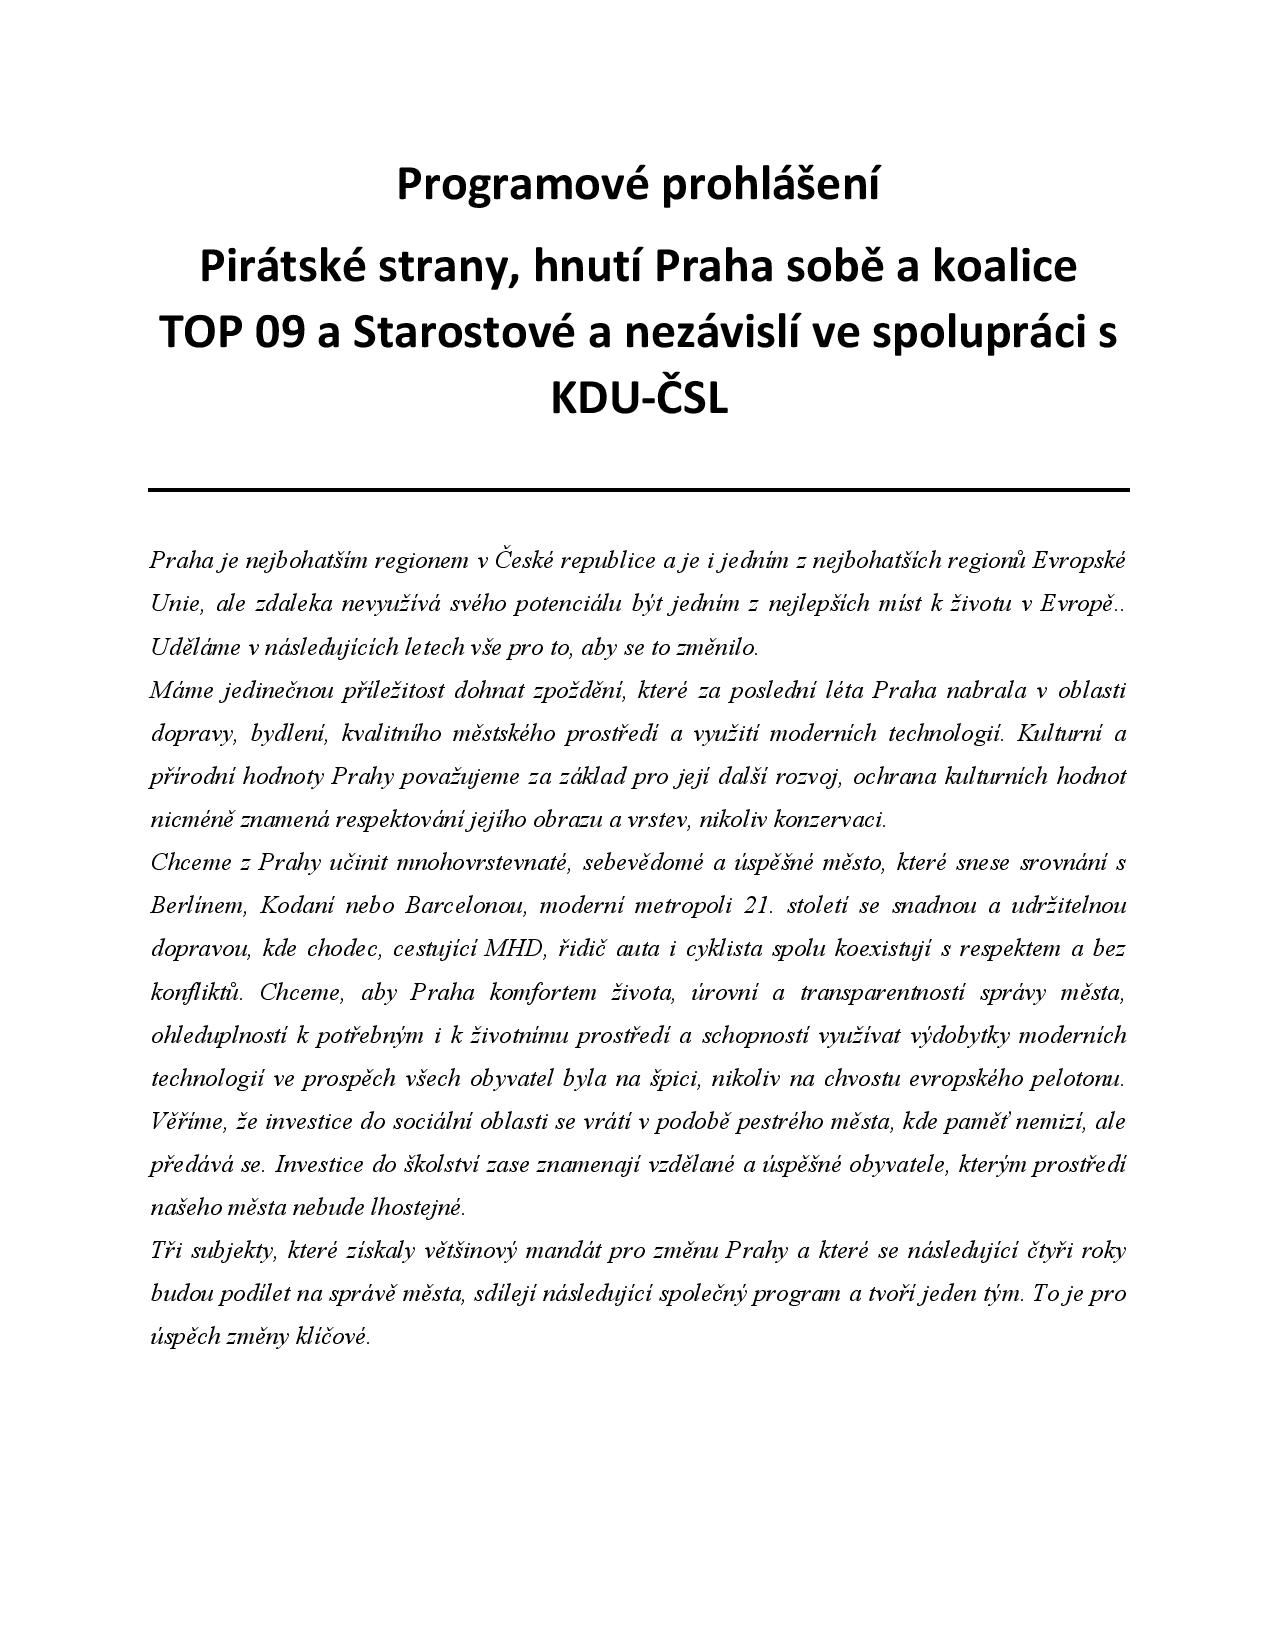 Koaliční program - Praha Sobě - 7. 11. 2018